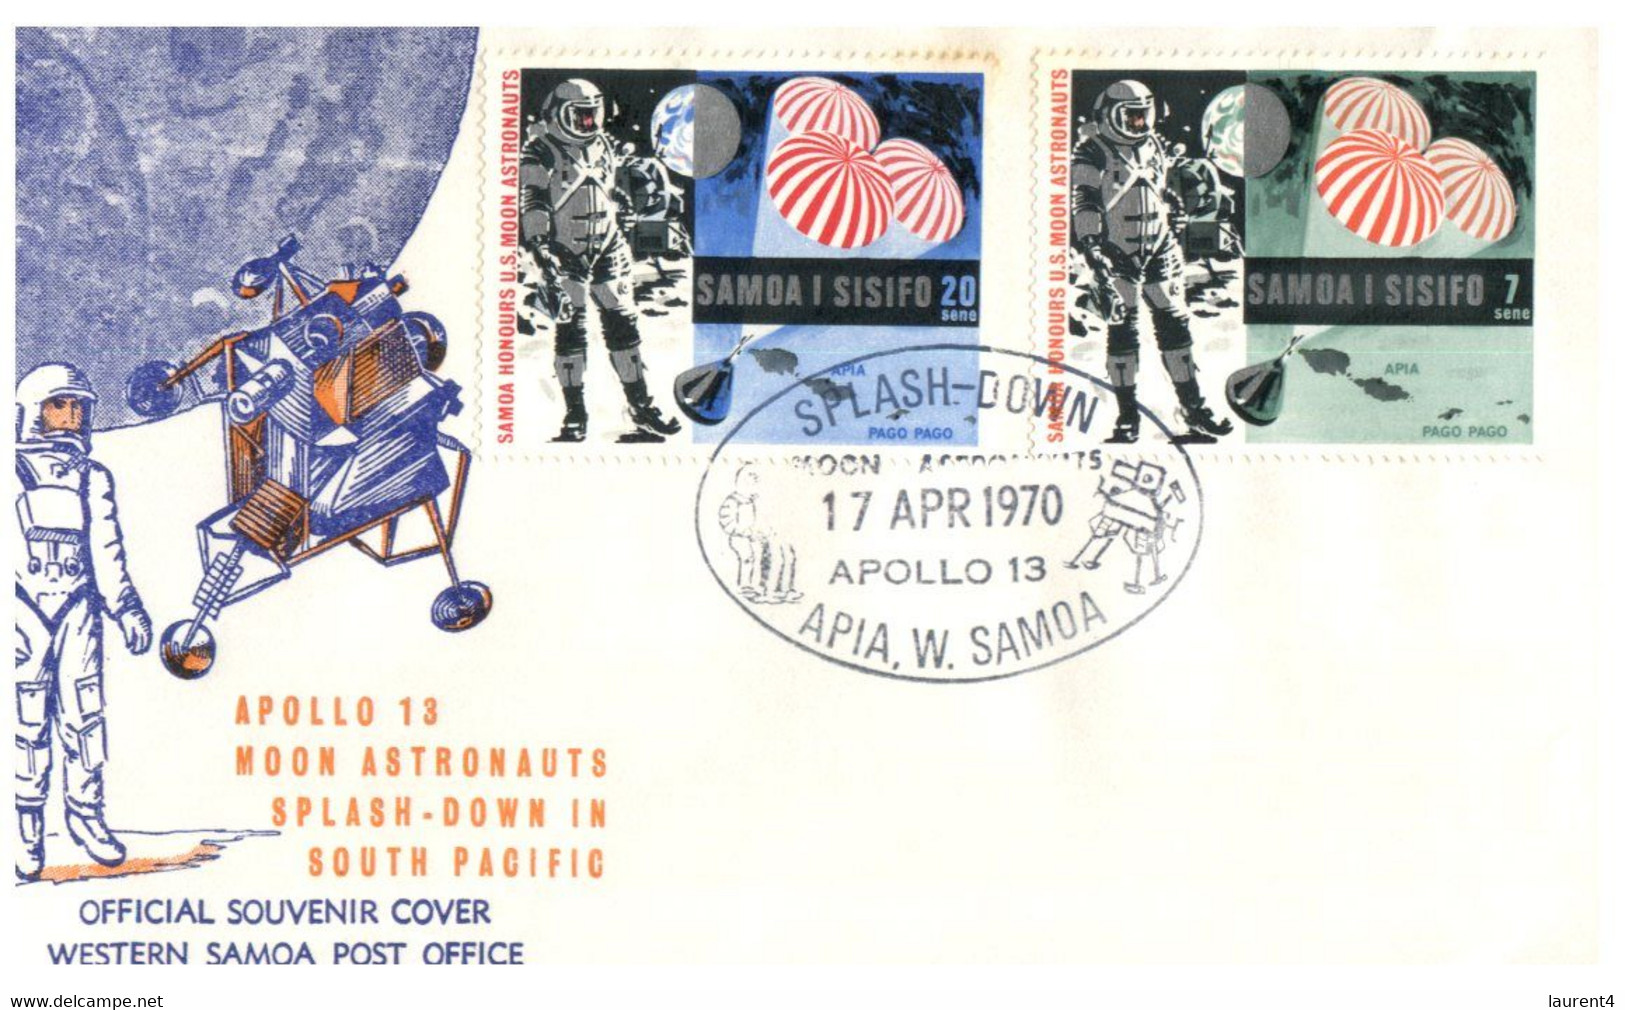 (SS 7) FDC - Apollo 13 - Spash Down - Samoa I Sisifo - 2 Covers - Océanie